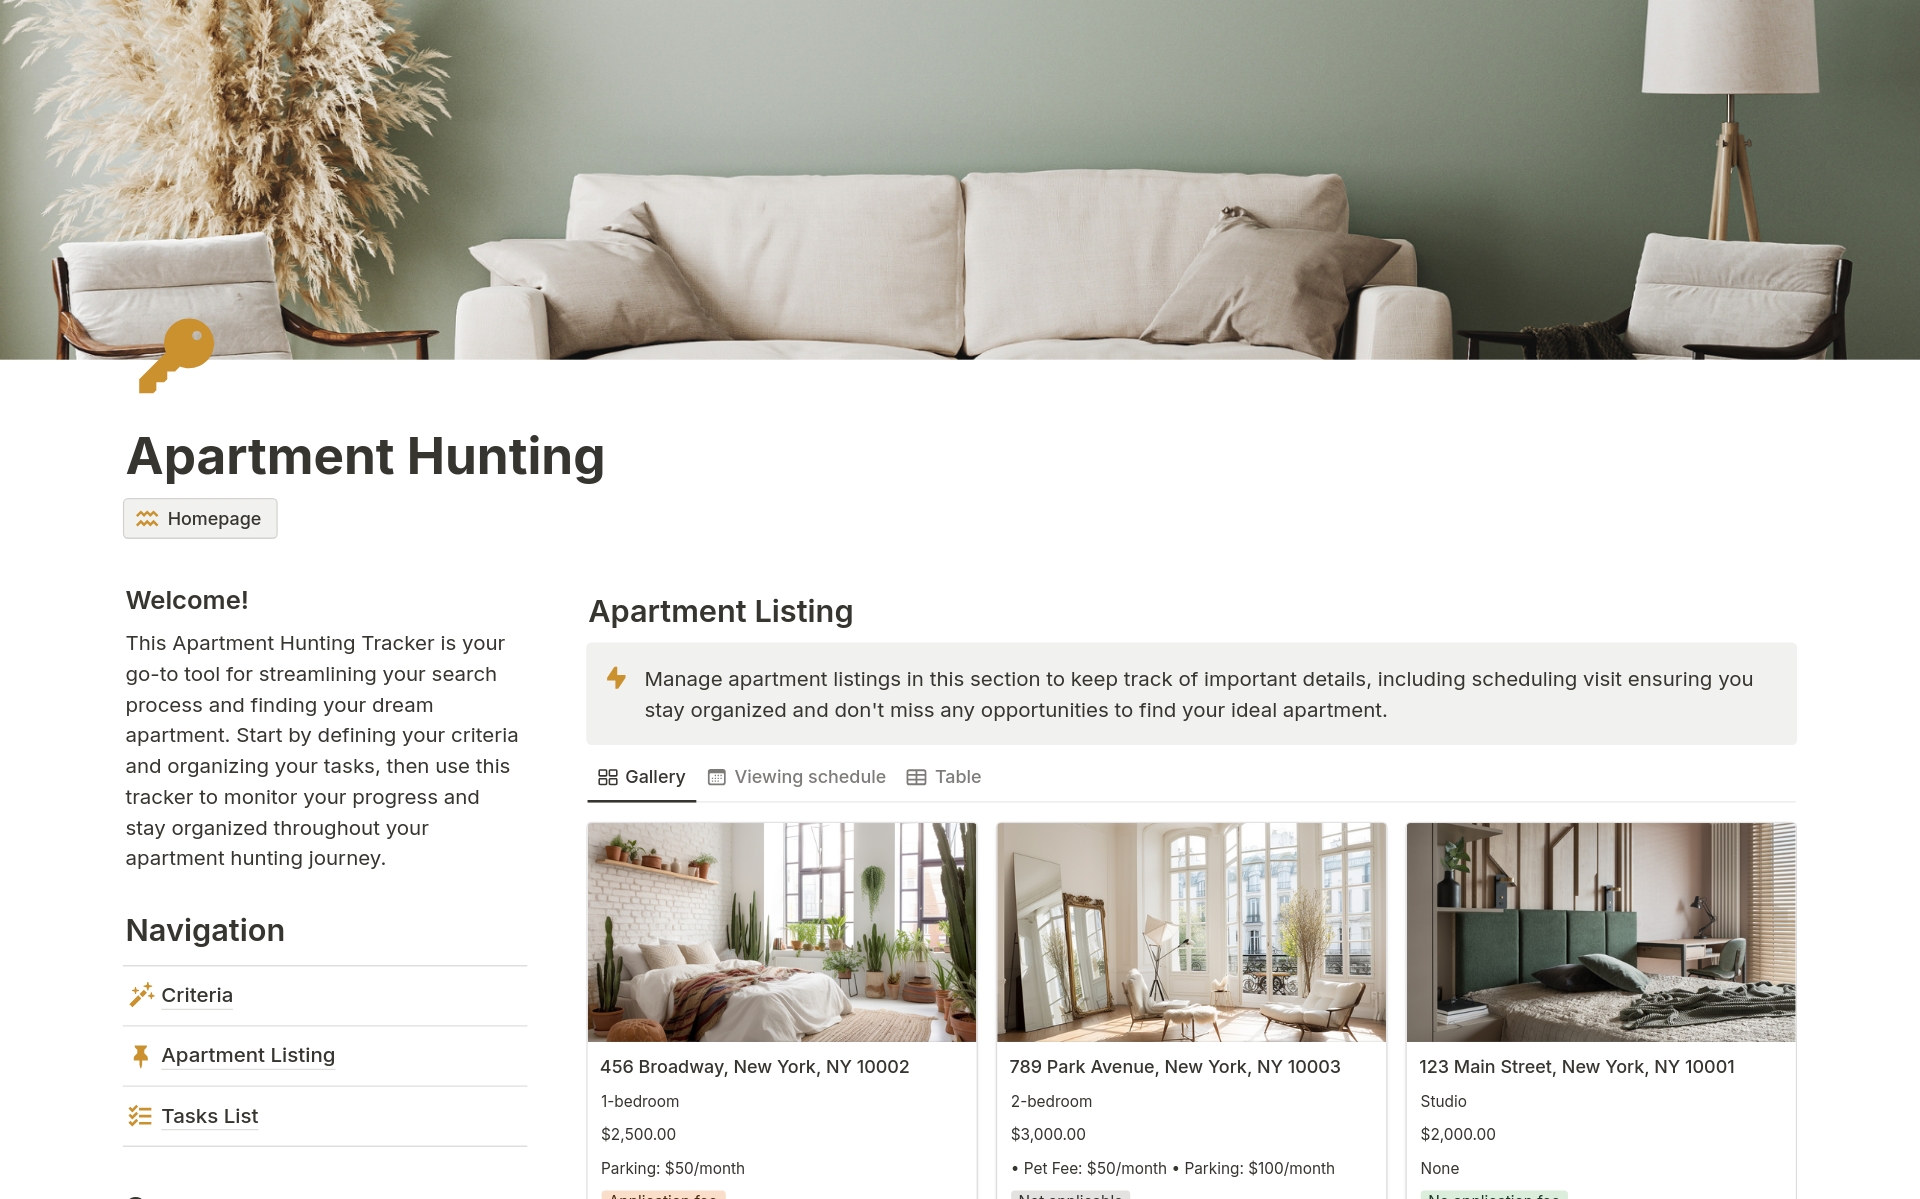 En förhandsgranskning av mallen för Apartment Hunting, House Hunting